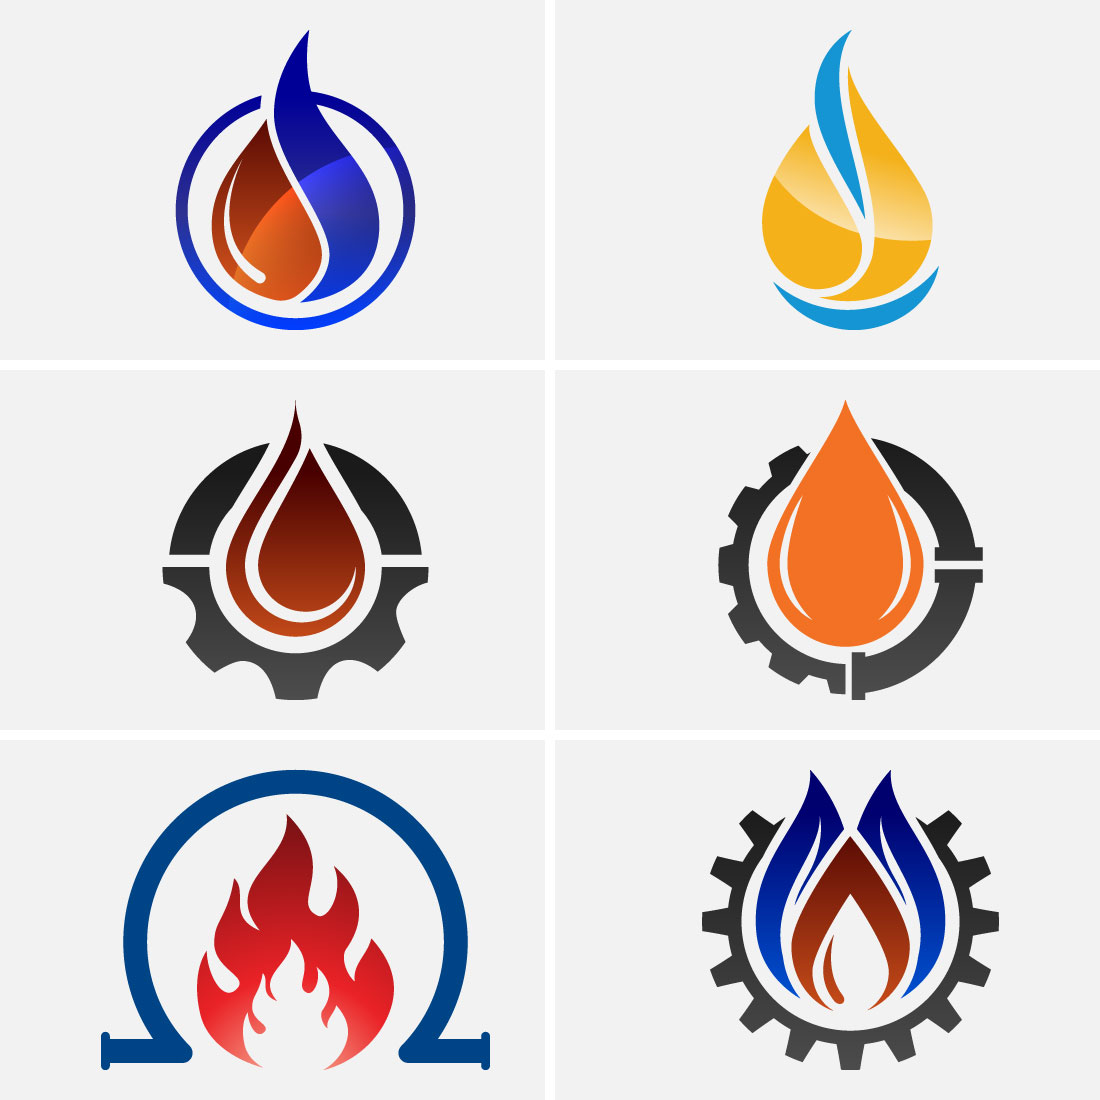 fire flames symbols